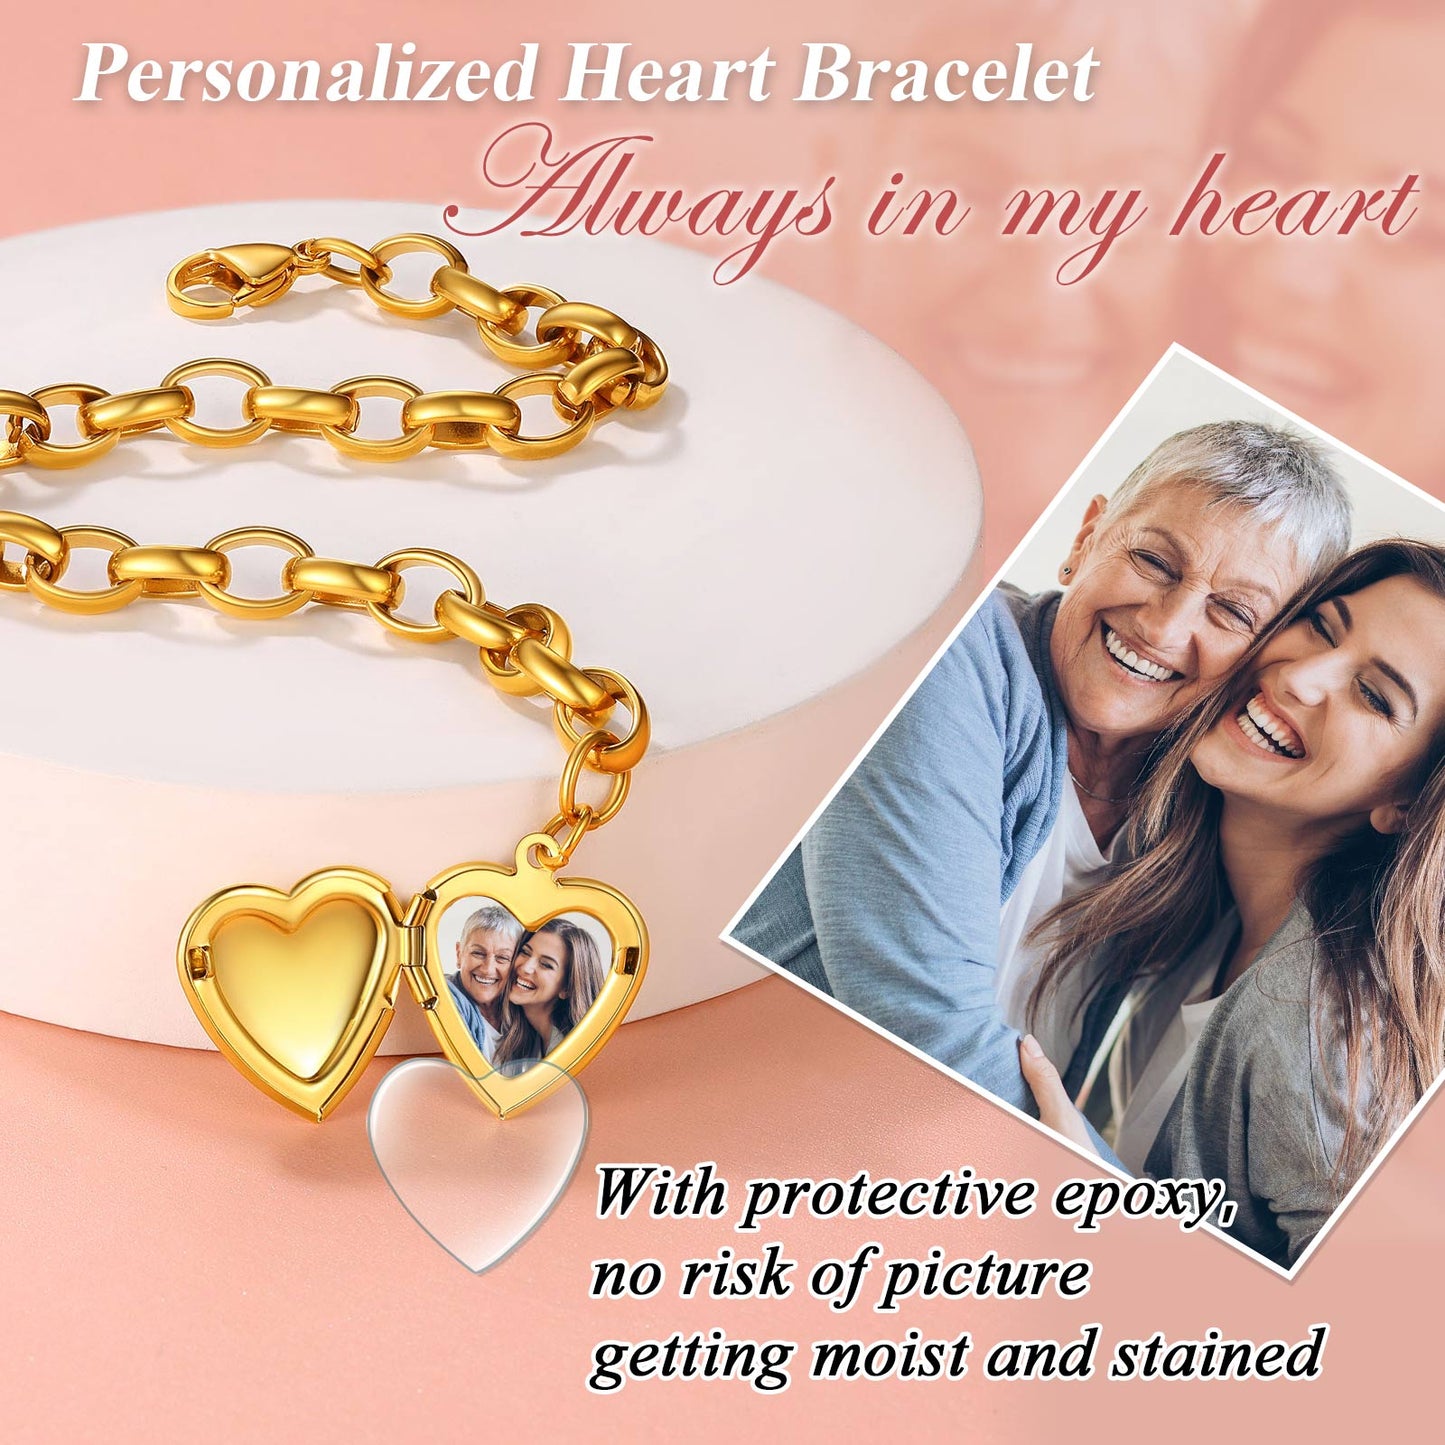 Heart bracelet for mom